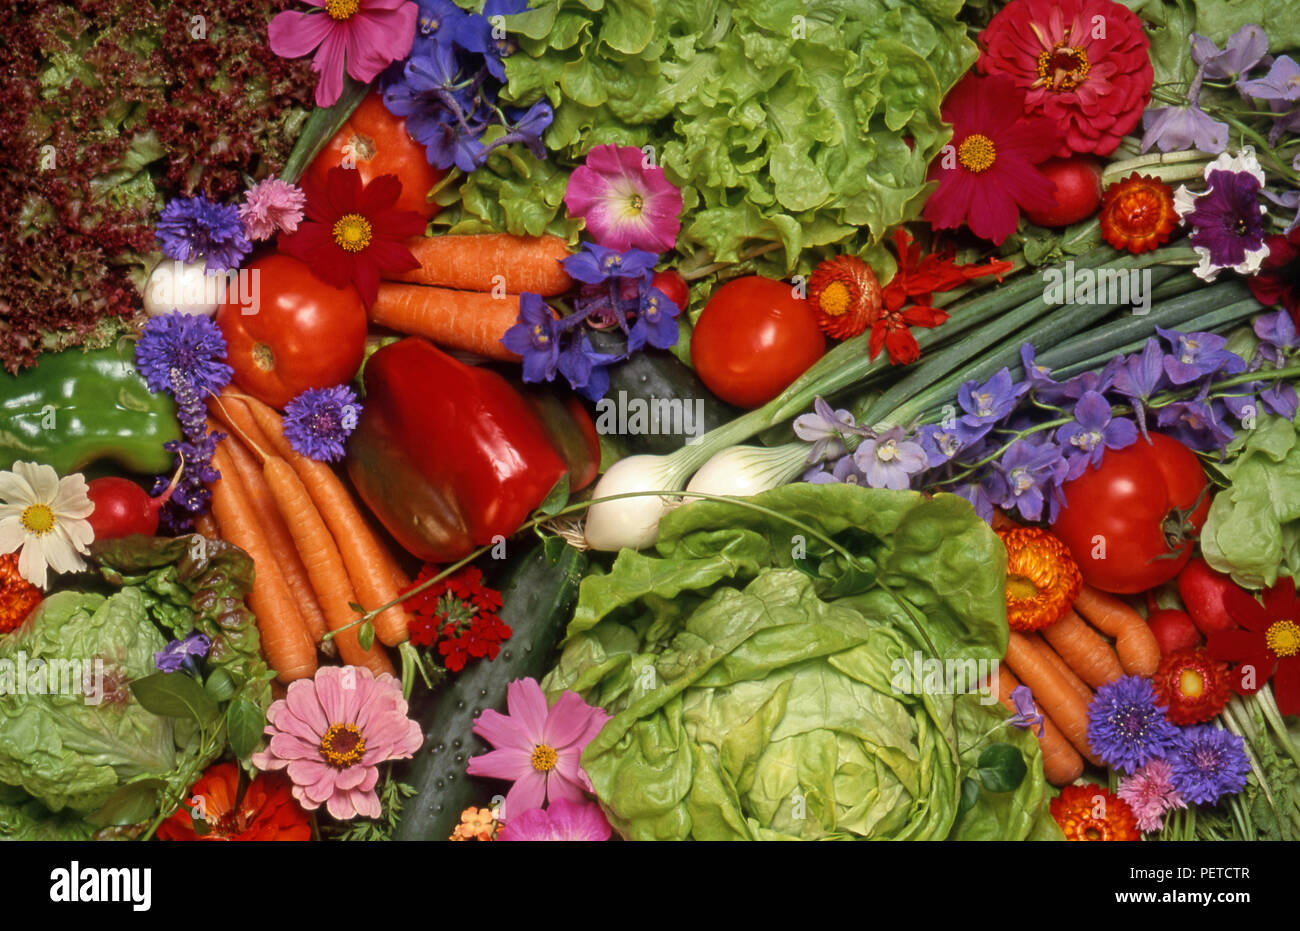 Arrangement assorties de fruits et légumes frais (carottes, tomates, laitues, poivrons, fleurs) Banque D'Images